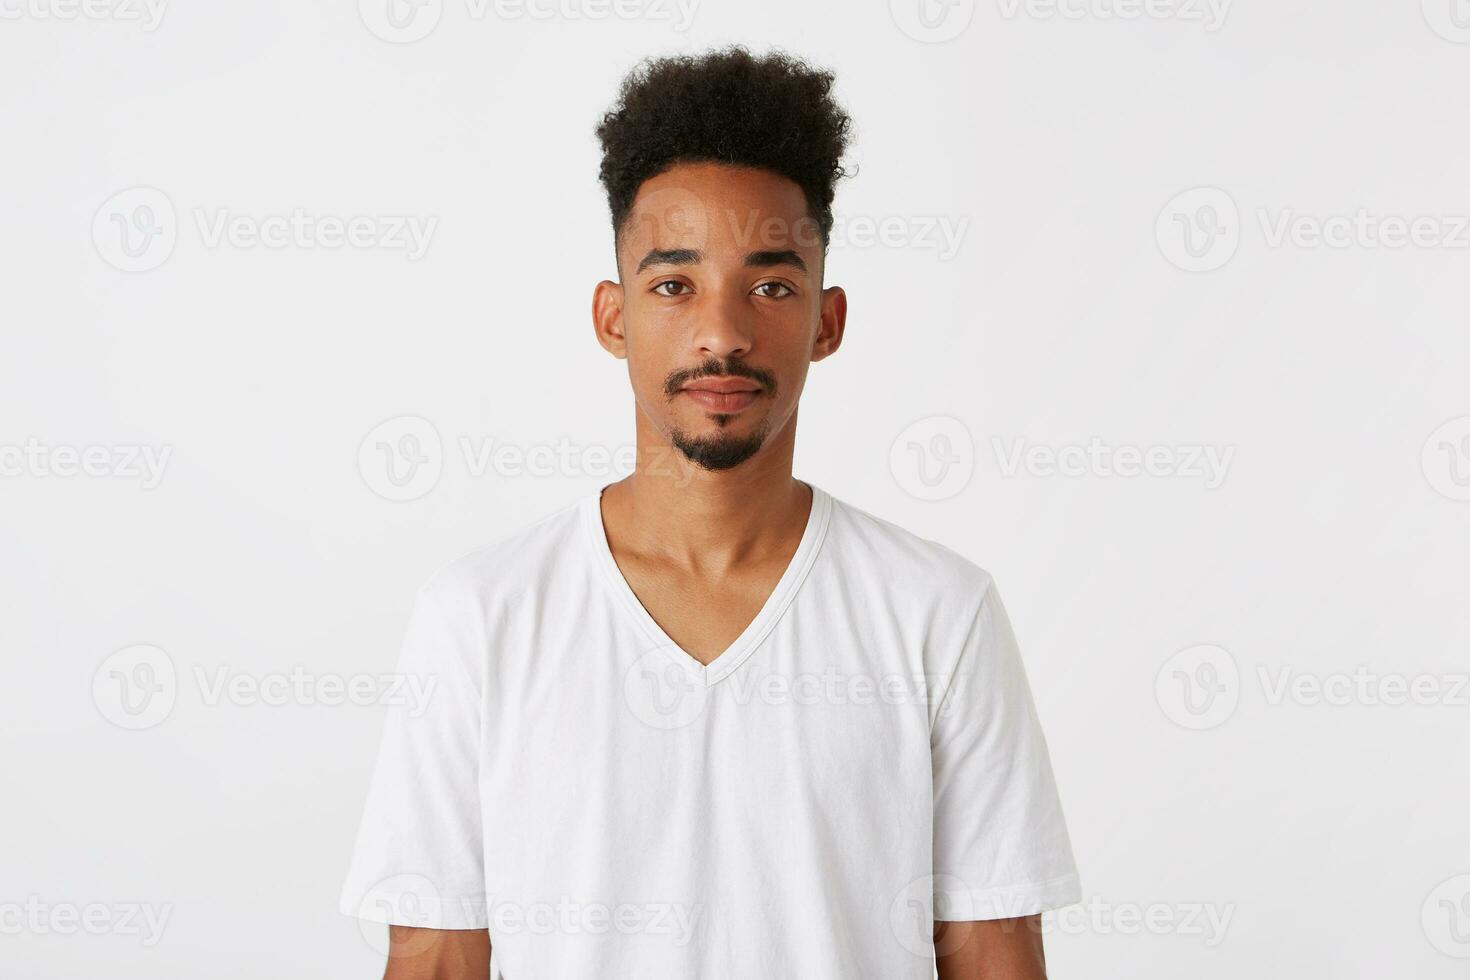 avvicinamento di fiducioso attraente africano americano giovane uomo con afro acconciatura foto